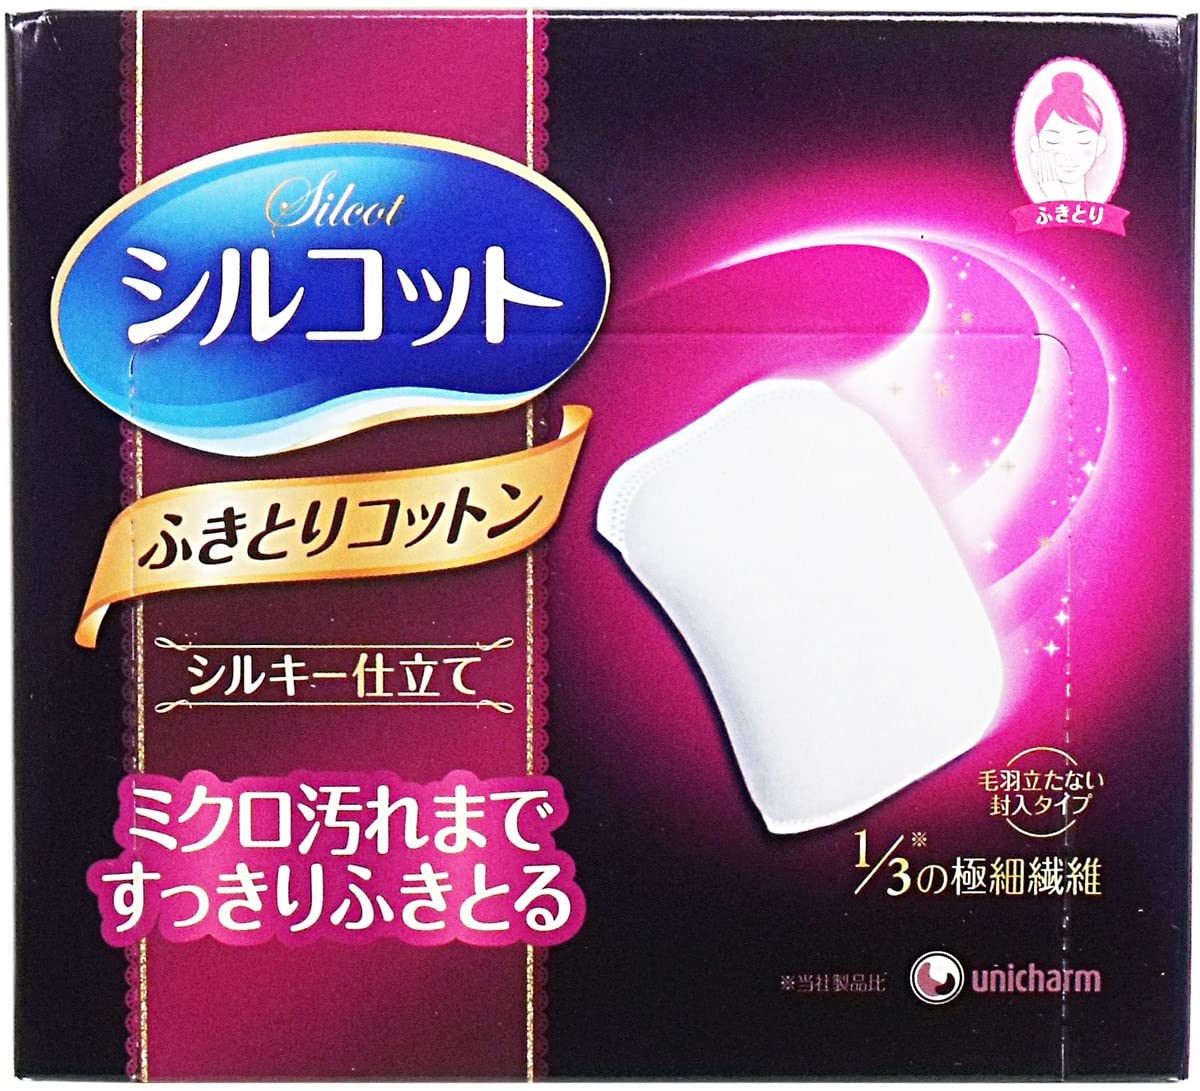 Unicharm Premium Micro-fiber Daily Moisturizing Cotton Pad 尤妮佳超丝柔亲肤保湿化妆棉 32枚